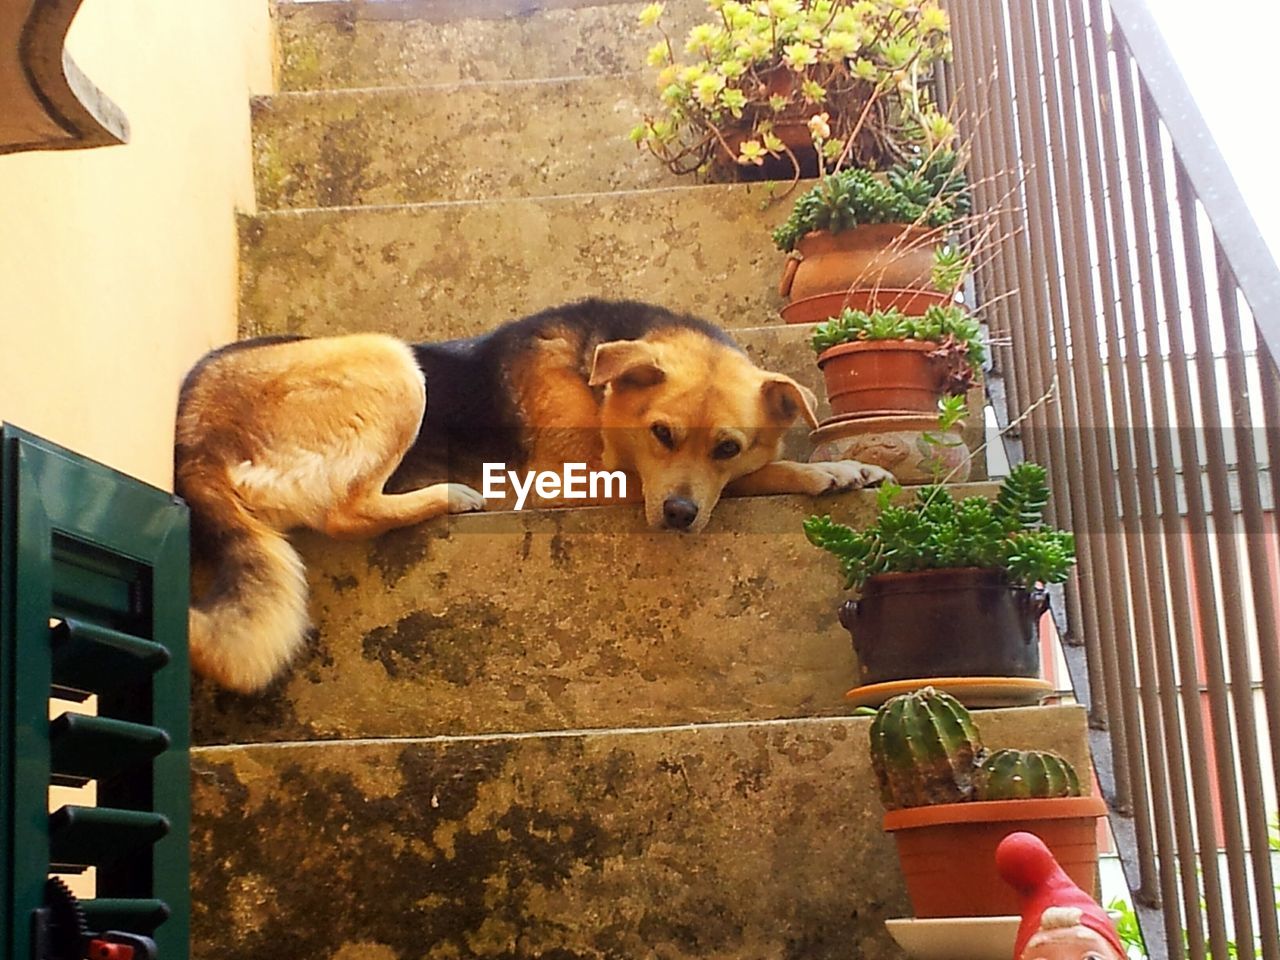 VIEW OF A DOG LOOKING AT CAMERA